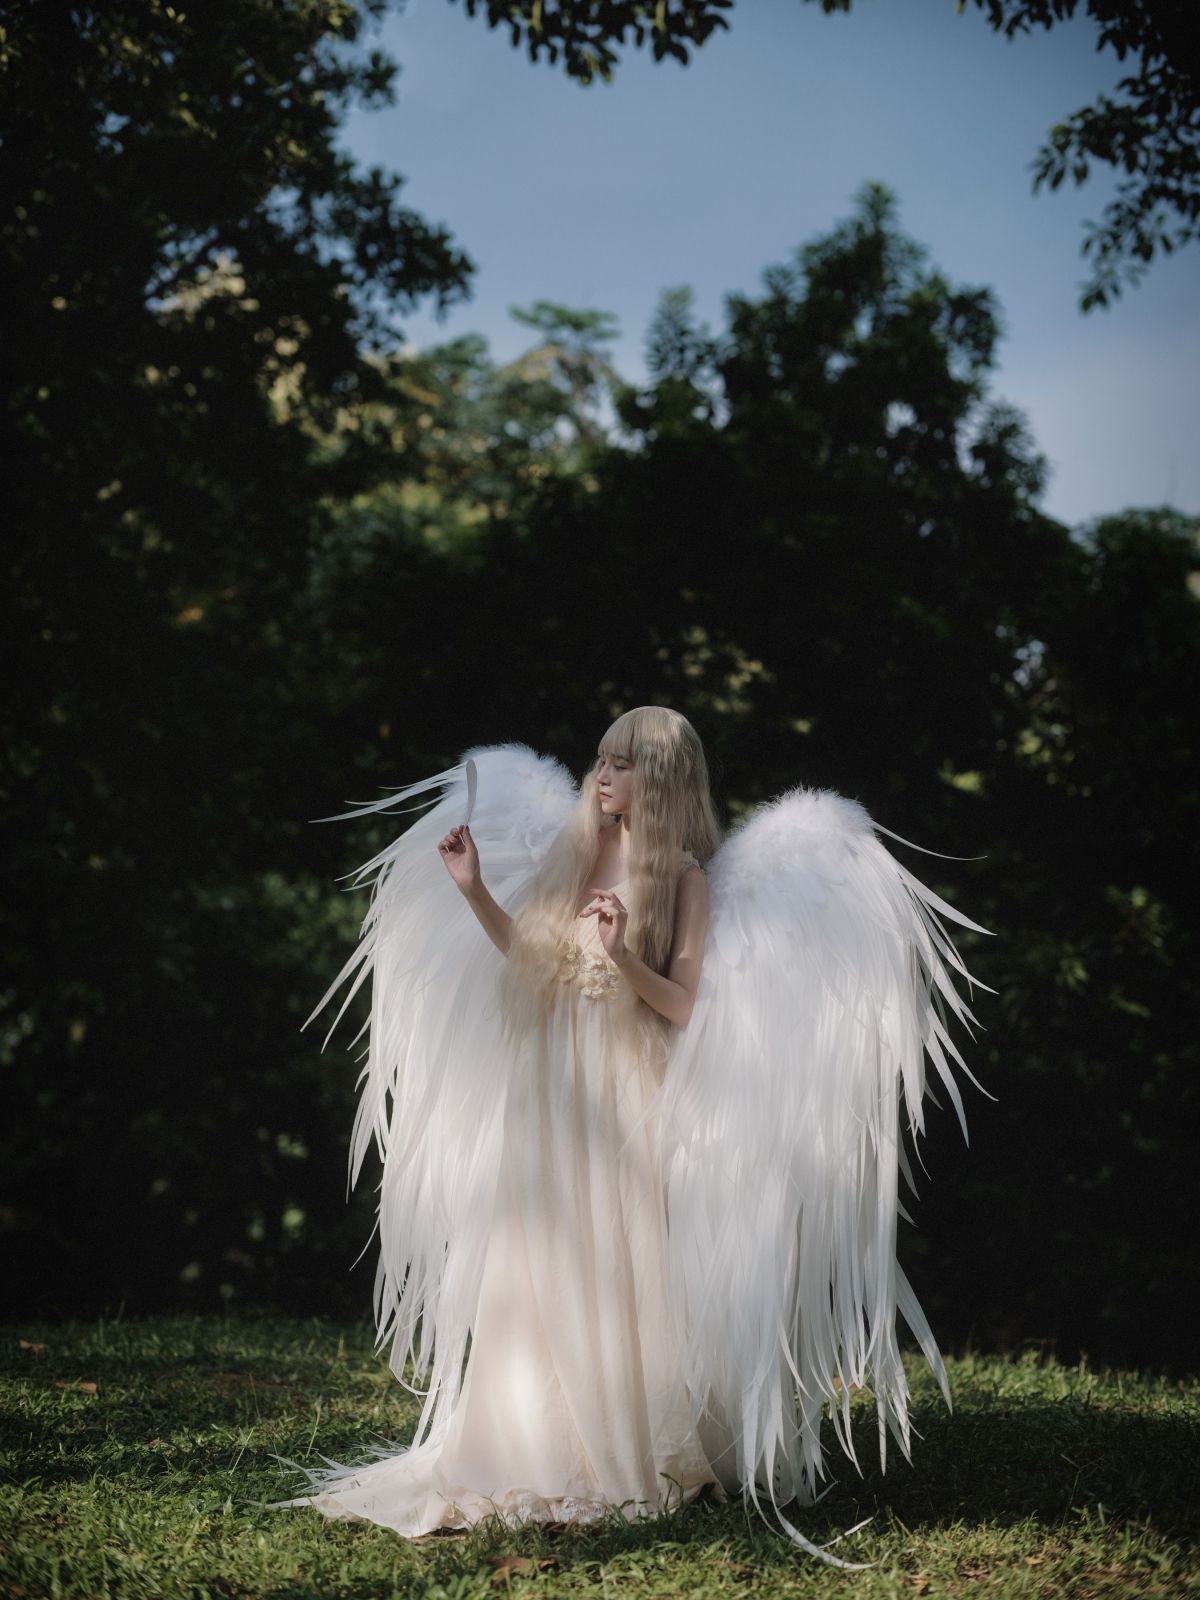 乌蝇Gor_琳琅《跌落凡间的天使》美图作品图片4